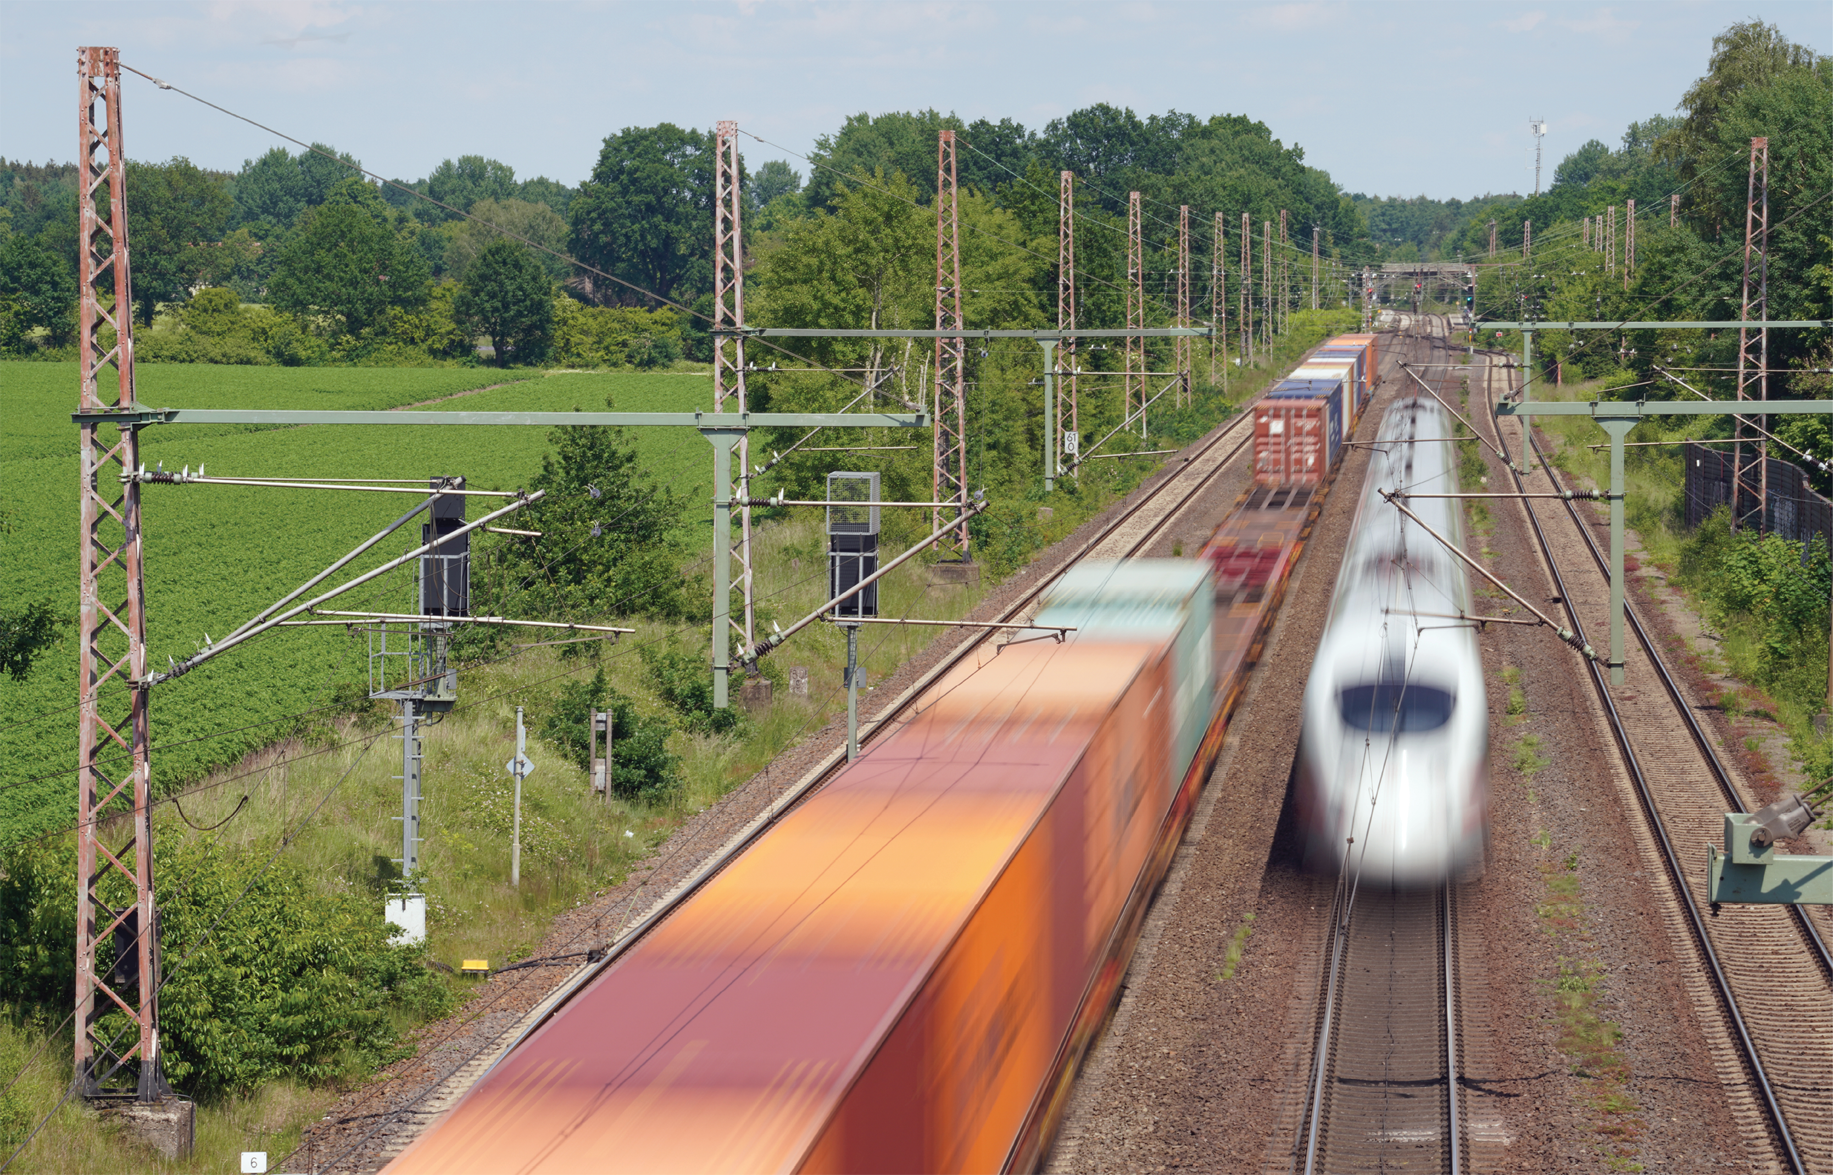 Güter- und Personenverkehr auf dem Korridor Hamburg-Hannover, ein Kapazitätsengpass im Schienennetz